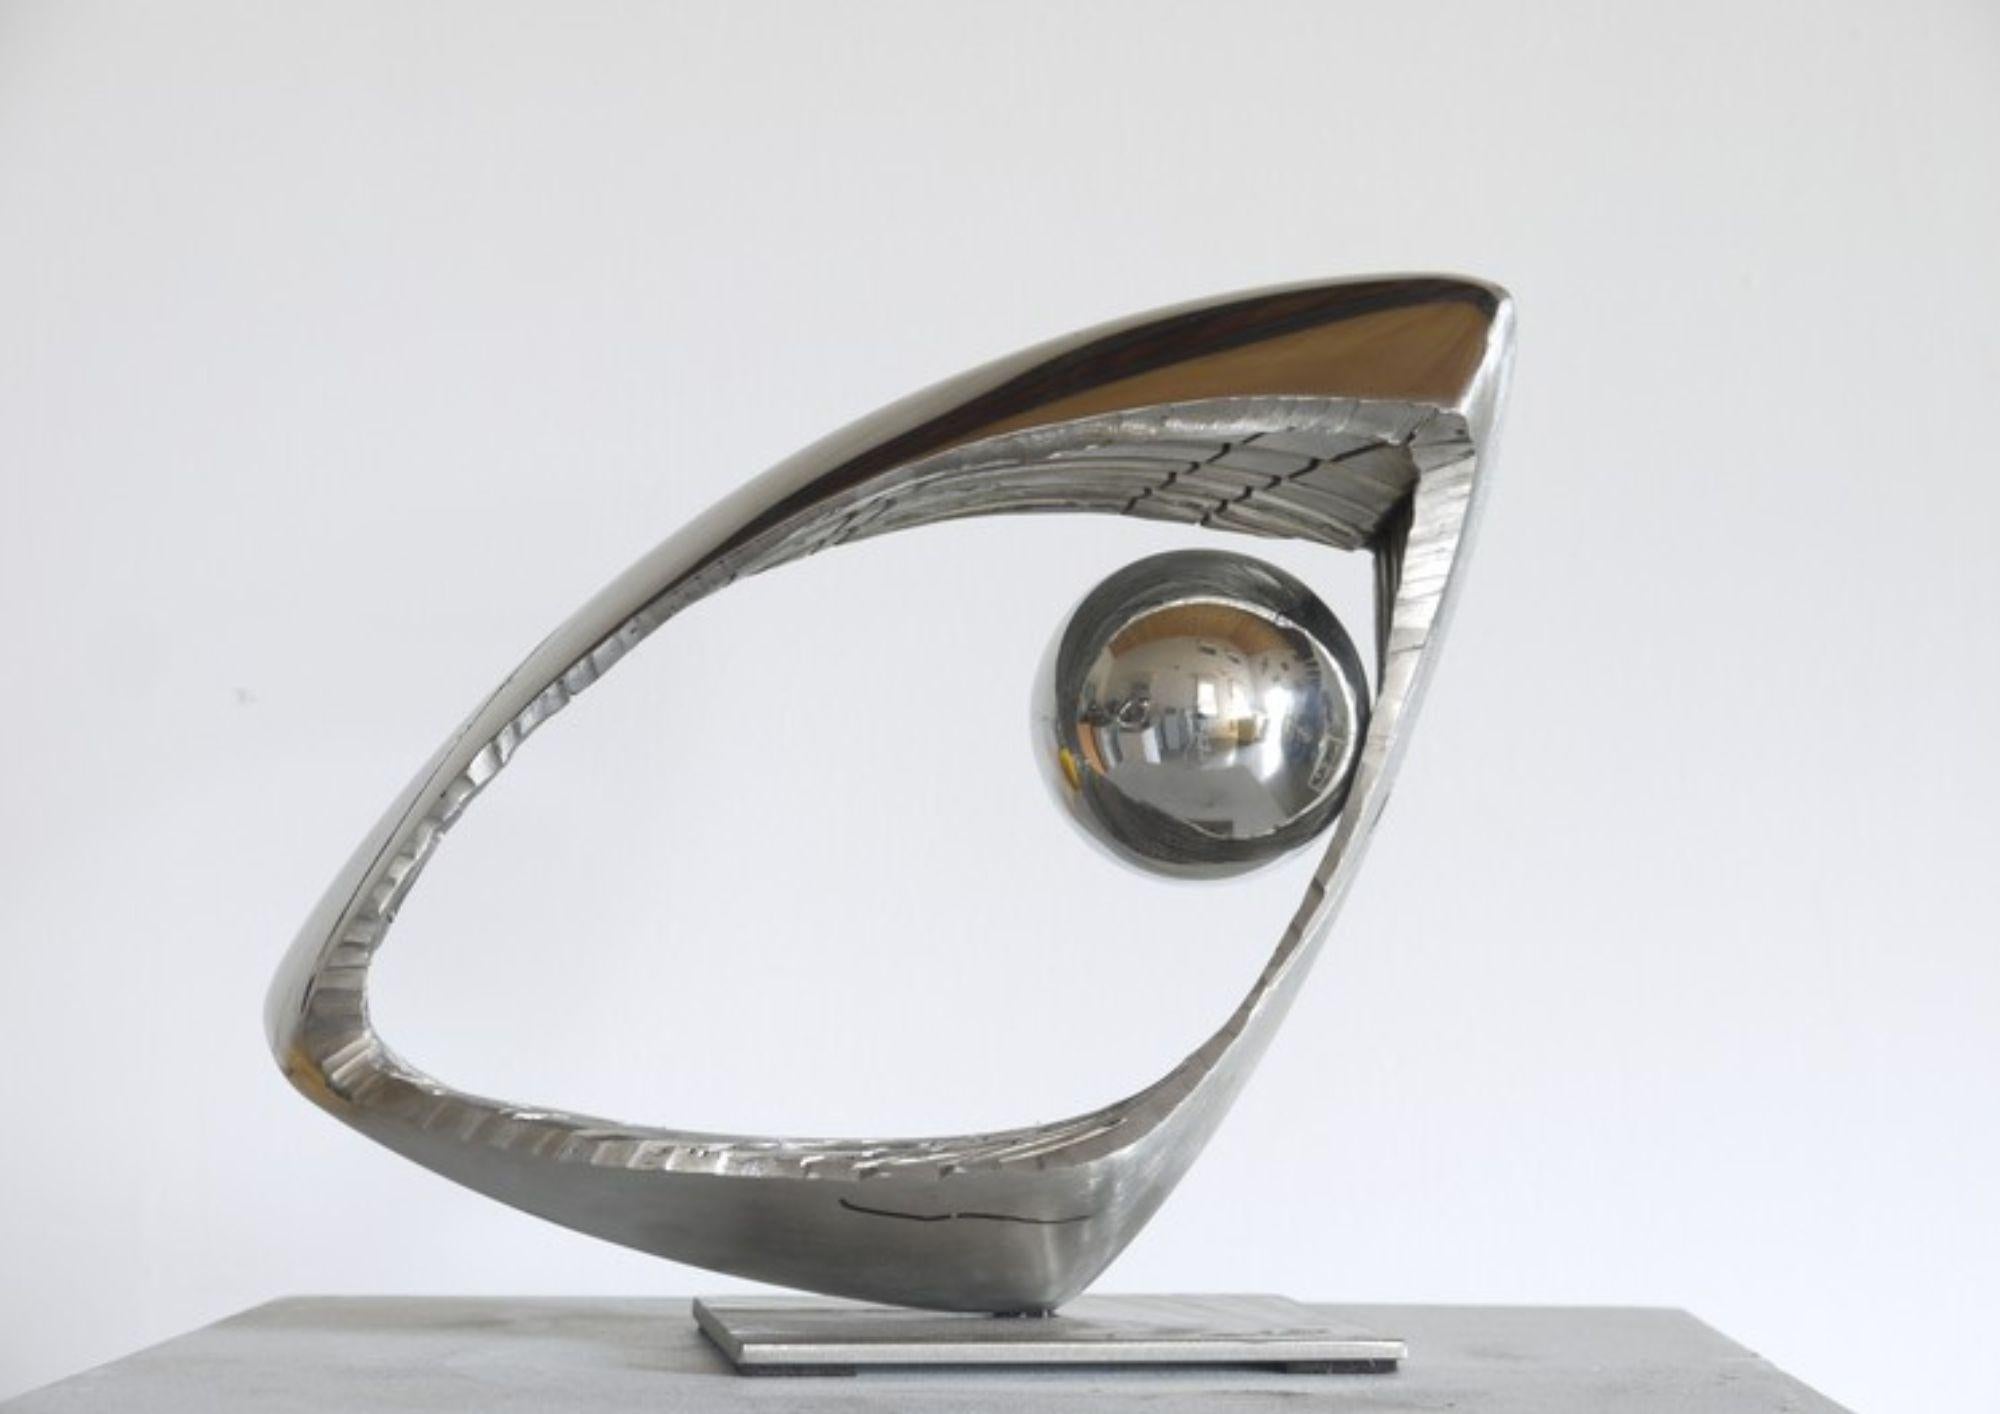 Die Skulptur Mobius 8 ist ein Werk, das die Konzepte von Zirkulation, Torsion und Bewegung durch den Möbiusring erforscht. Der Künstler lässt sich von dieser faszinierenden mathematischen Figur inspirieren, um eine Skulptur zu schaffen, die die